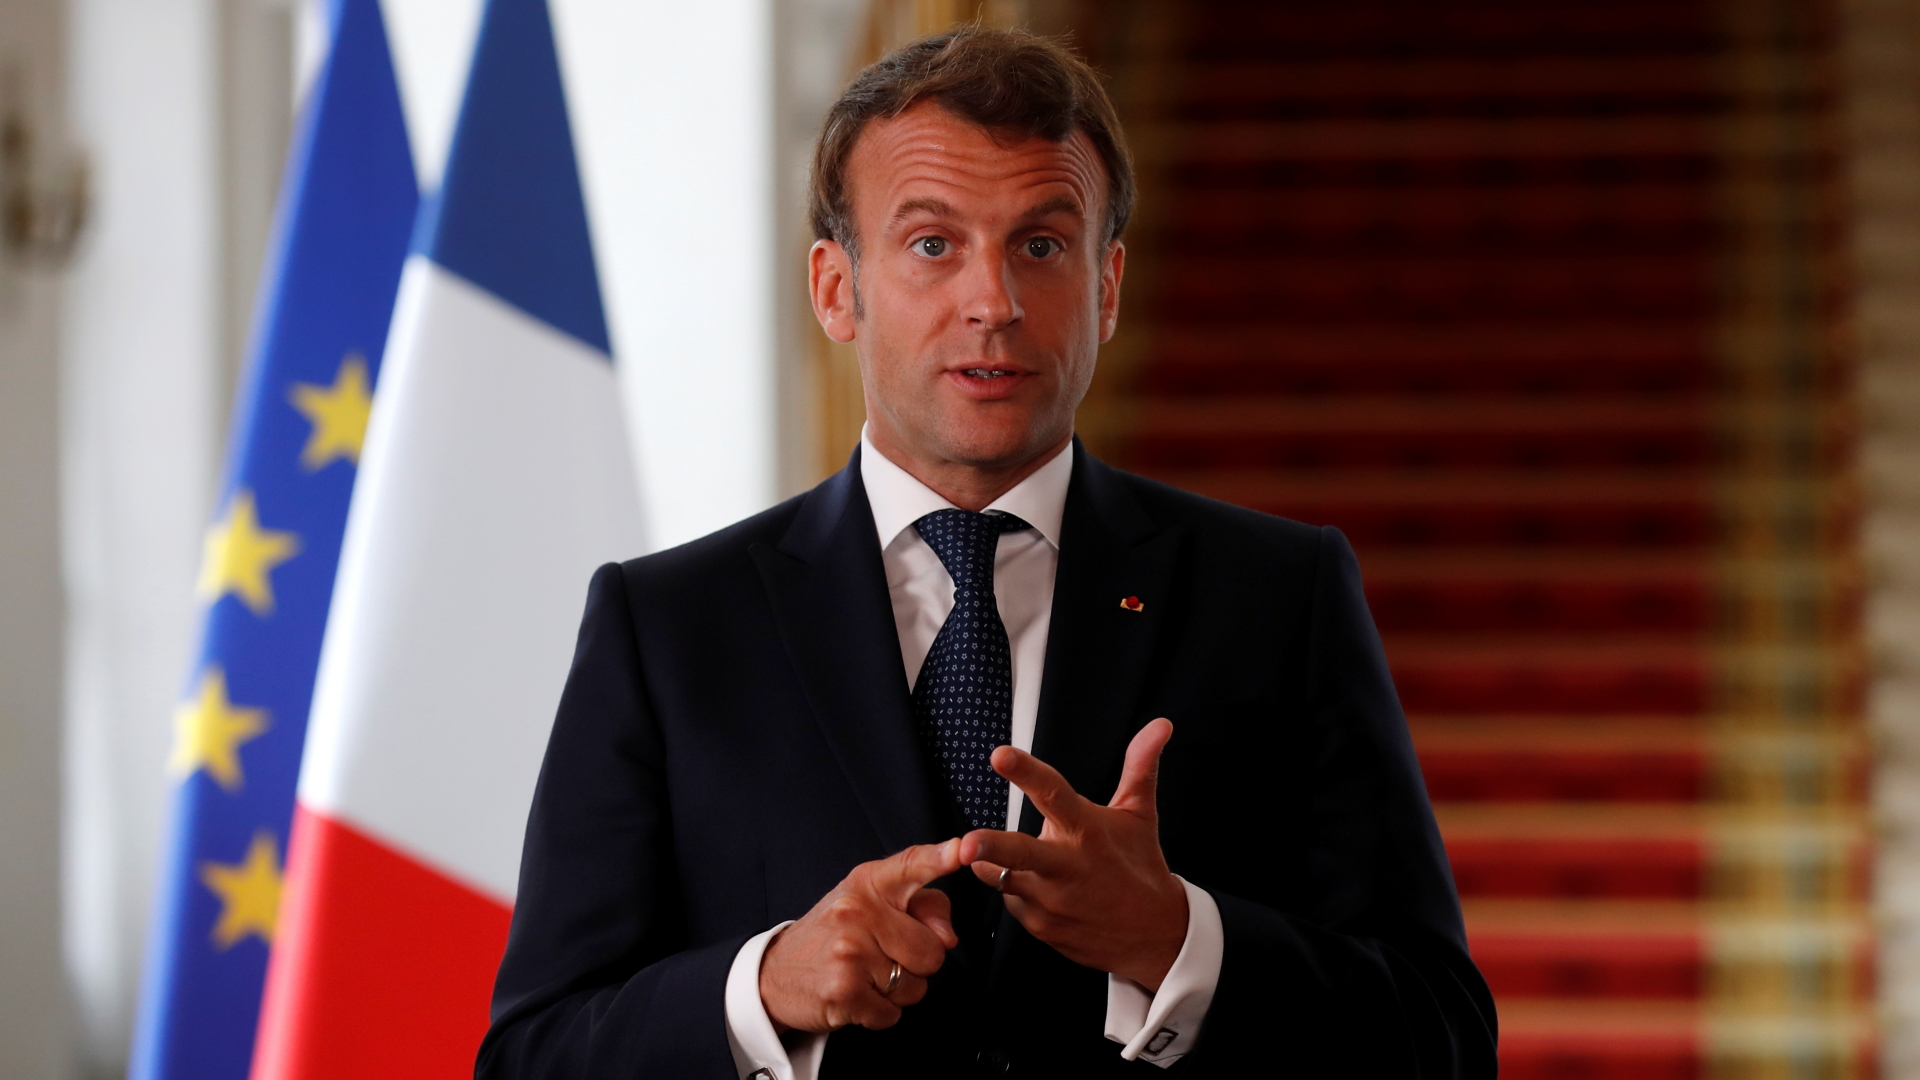 Frankreichs Präsident Macron bei der Online-Geberkonferenz für die Impfstoffsuche in der Corona-Krise | GONZALO FUENTES/POOL/EPA-EFE/Shu